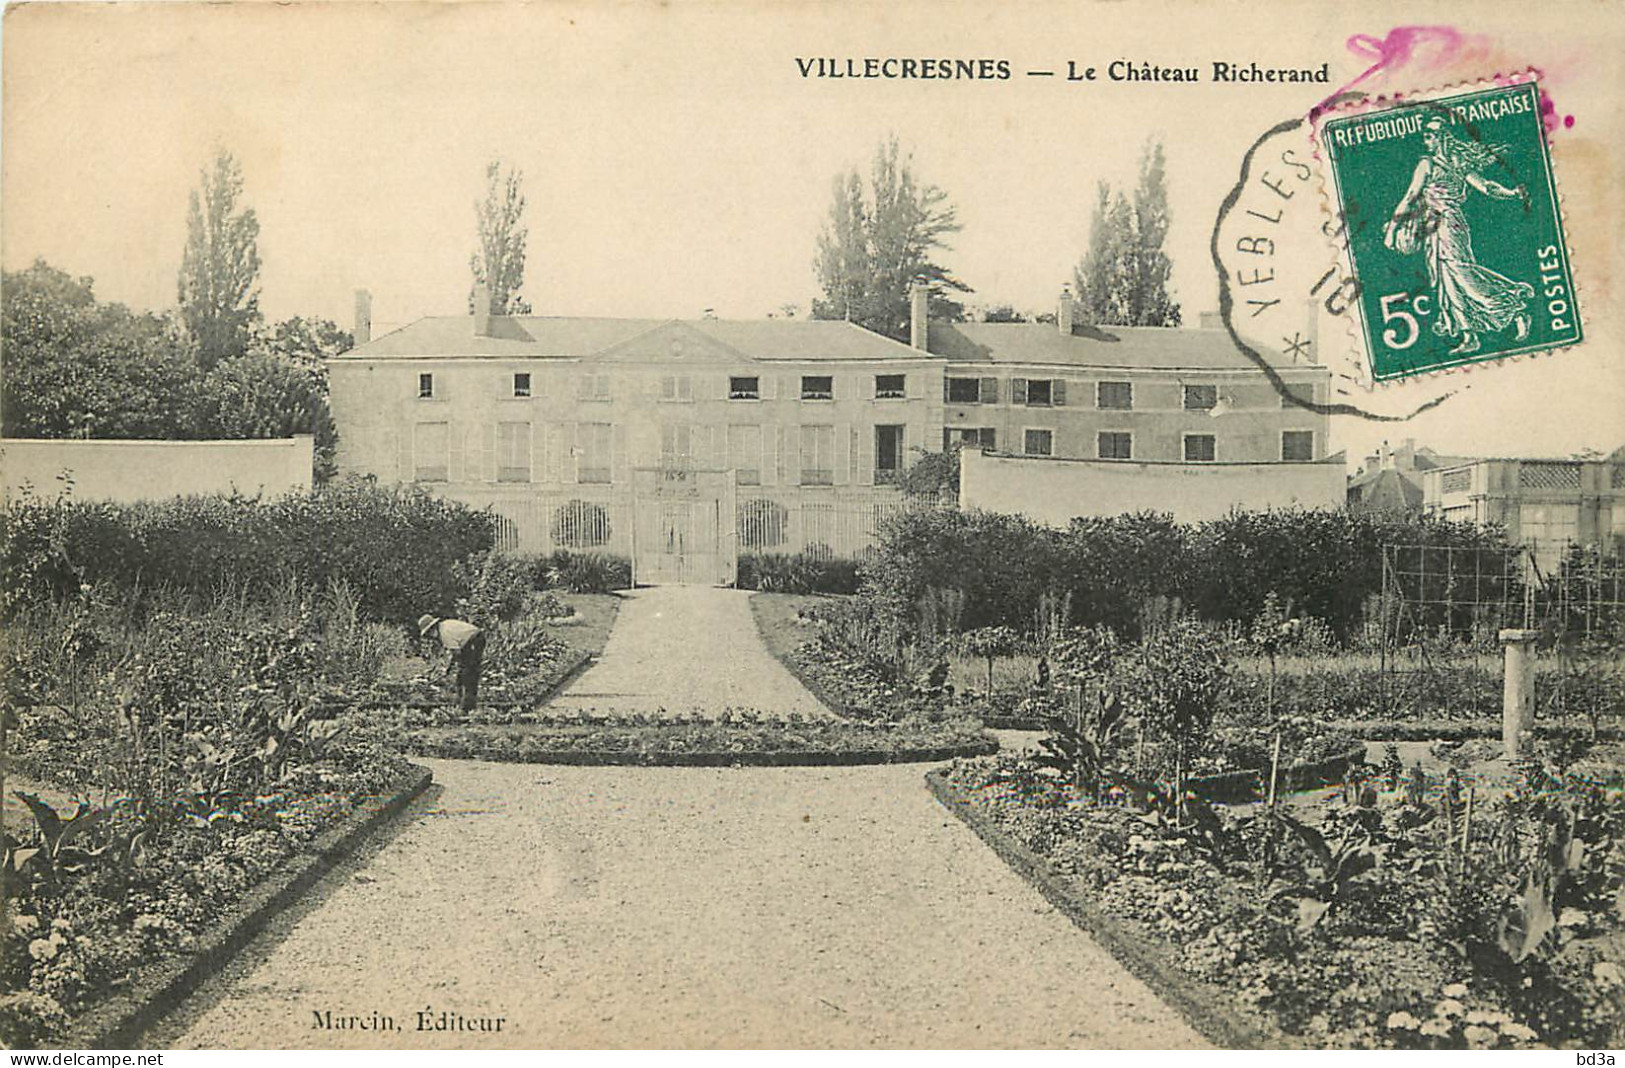  94 -  VILLECRESNES - LE CHATEAU RICHERAND - Villecresnes